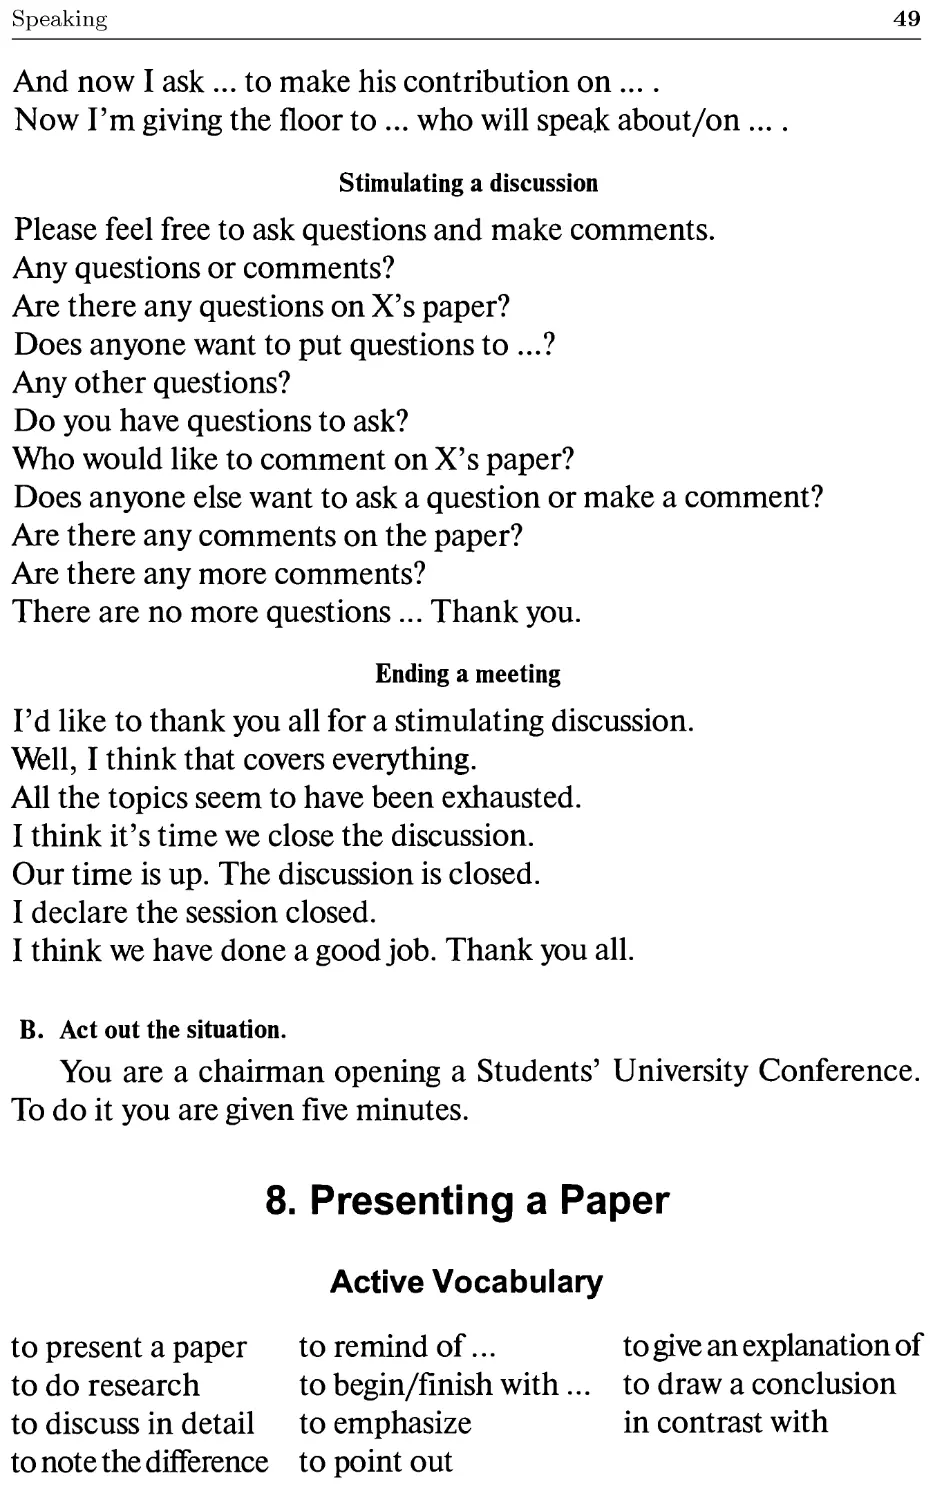 8. Presenting a Paper